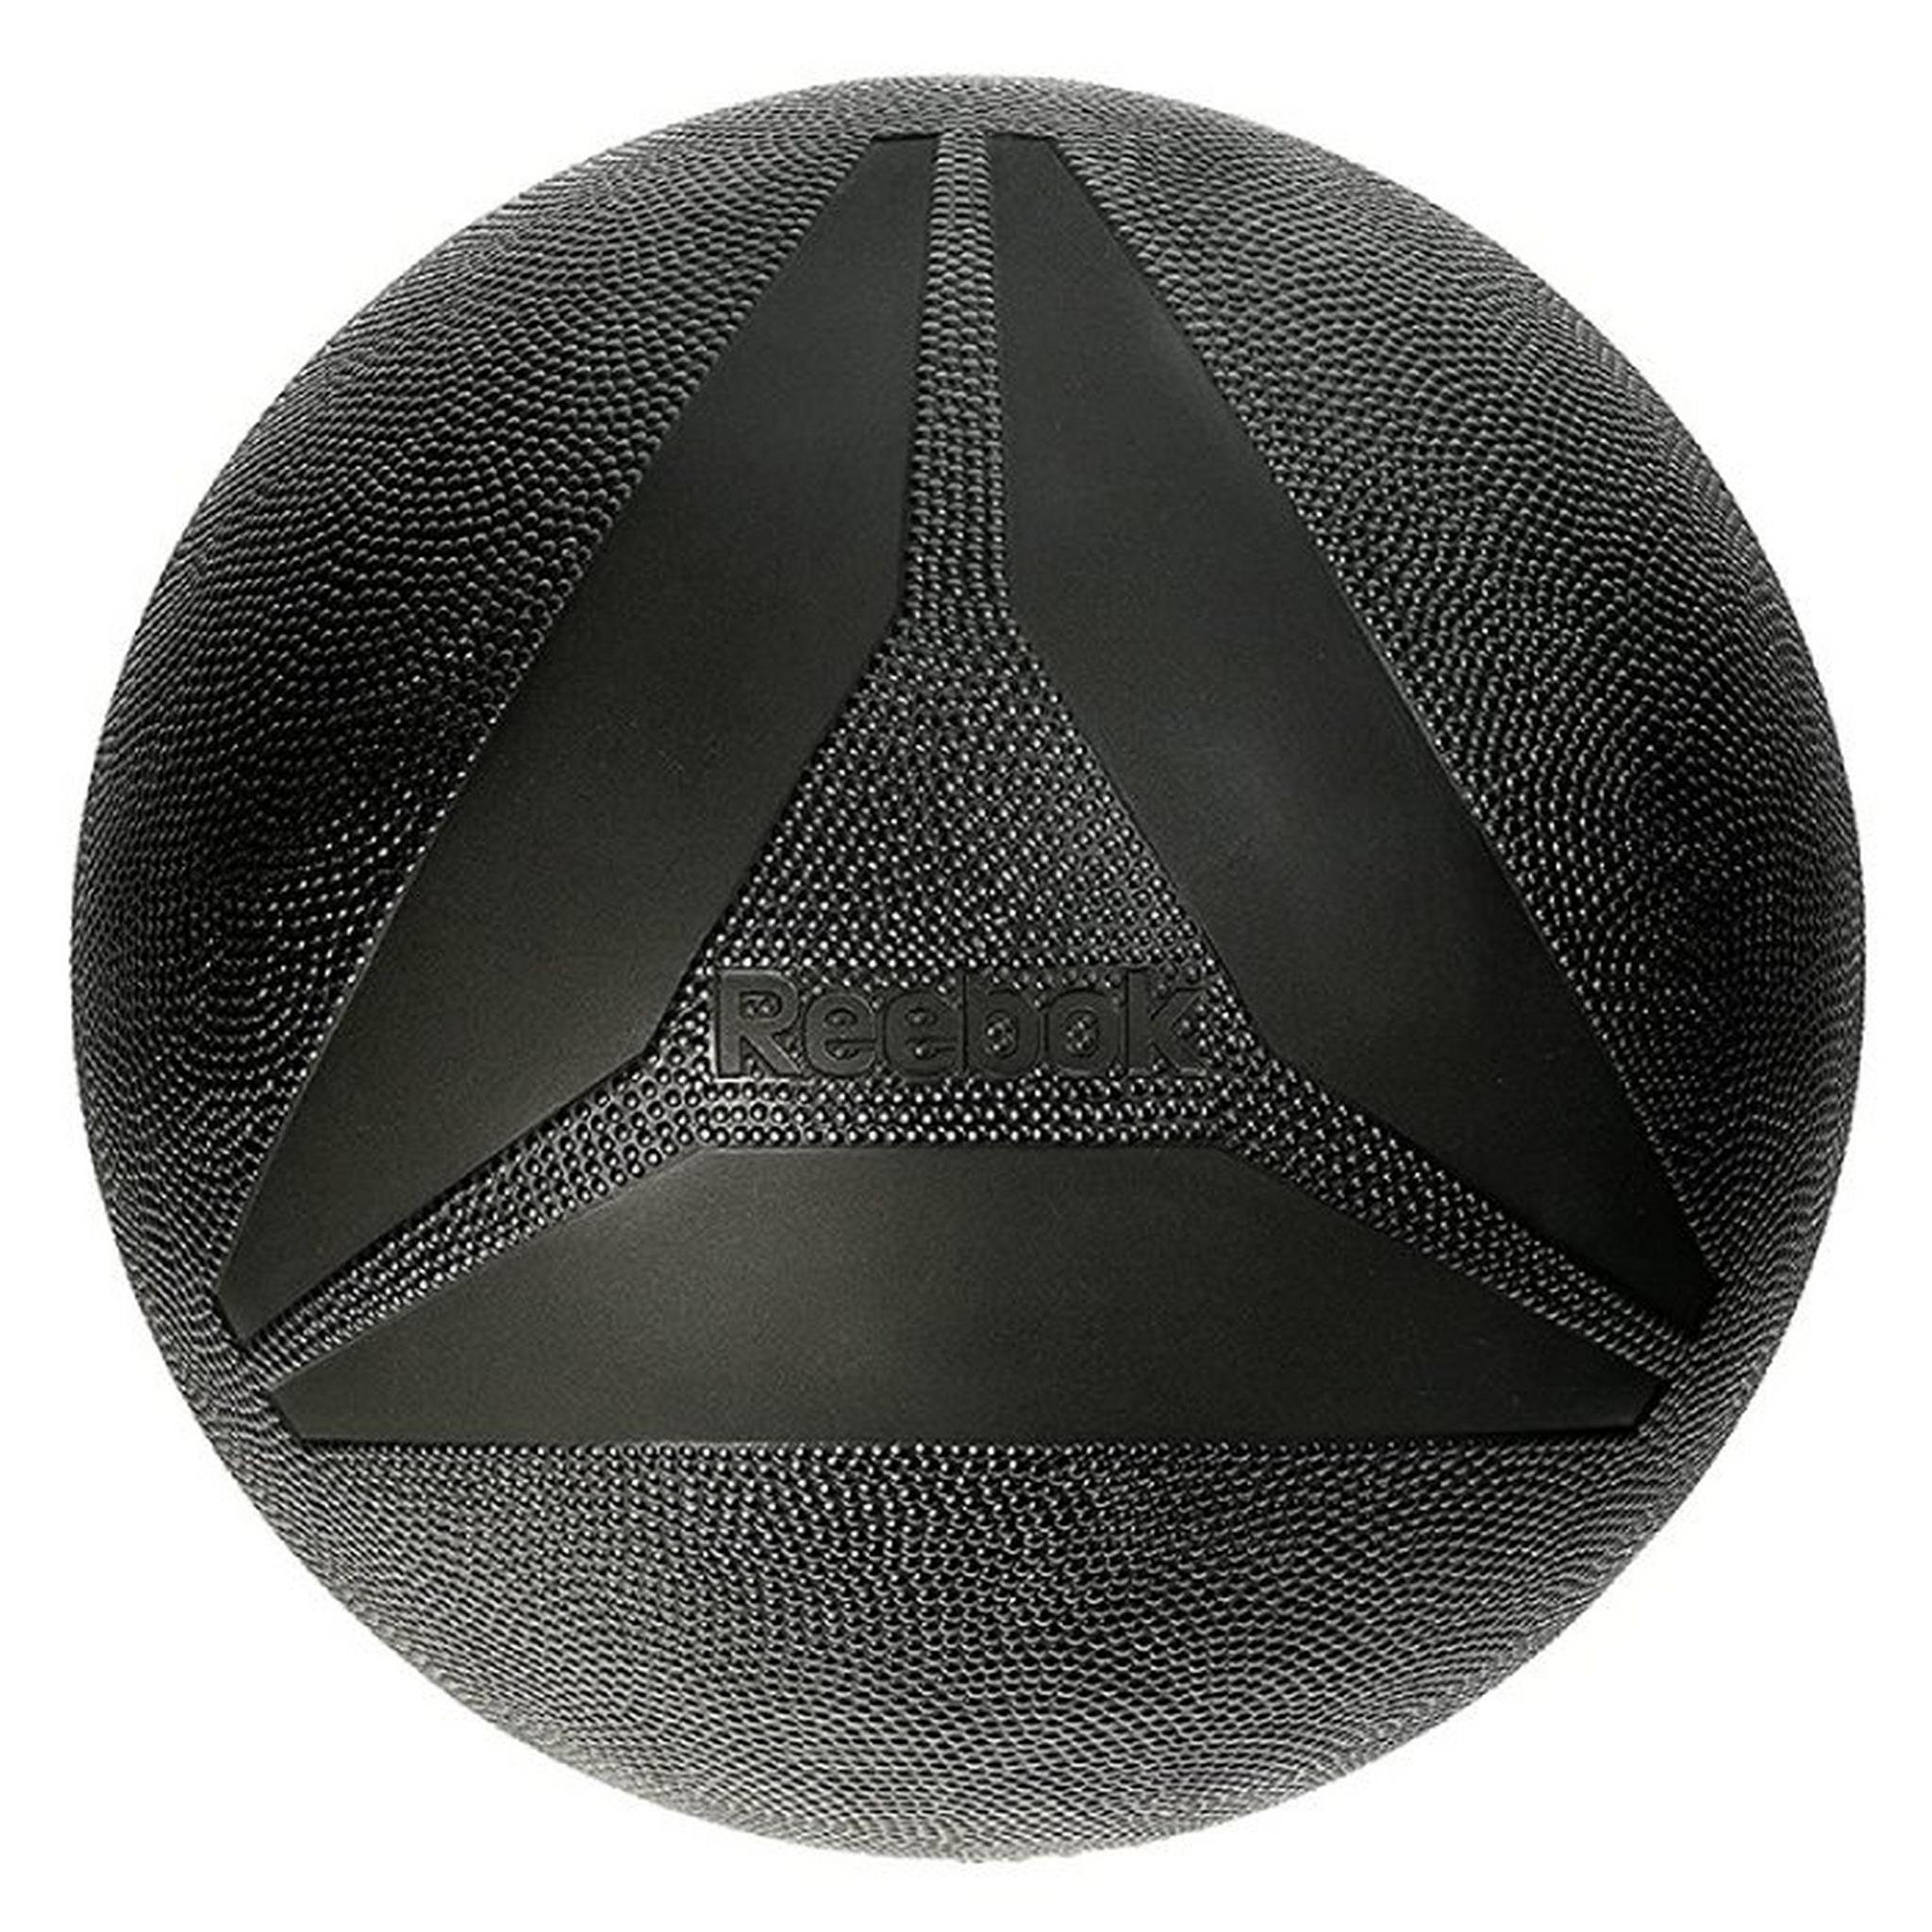 كرة طبية من ريبوك - 2 كجم (RSB-16052)